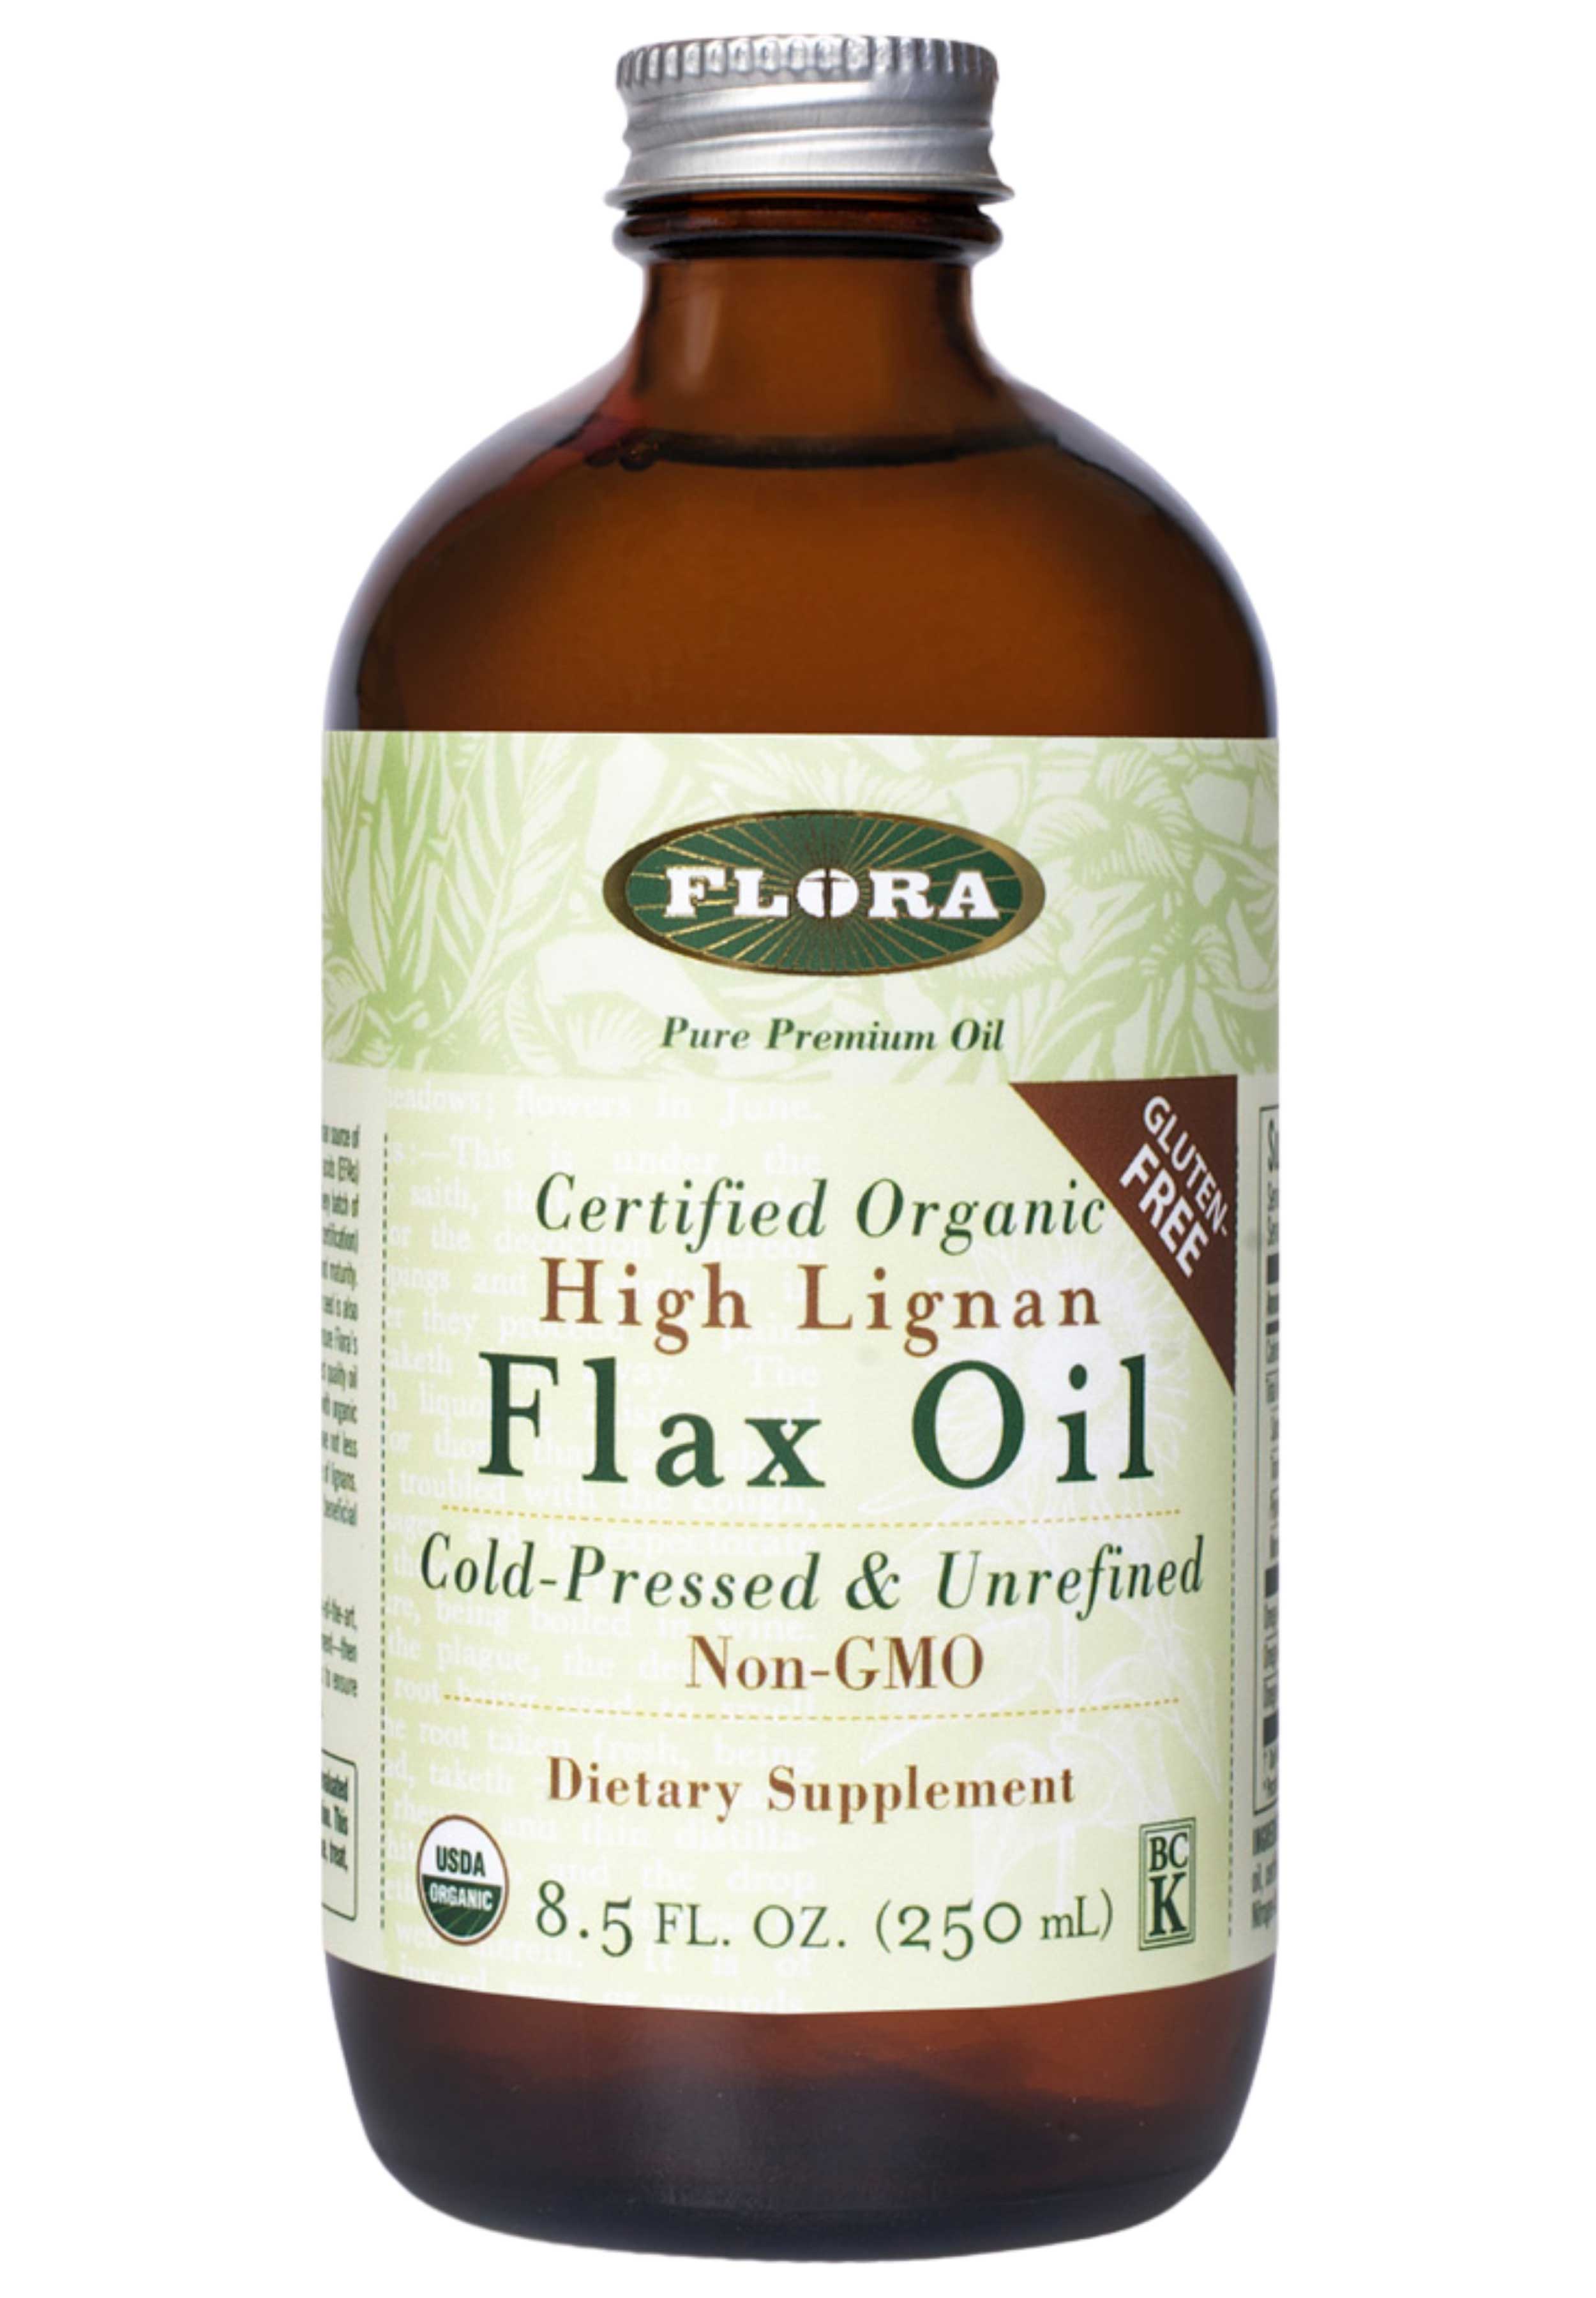 Flora High Lignan Flax Oil